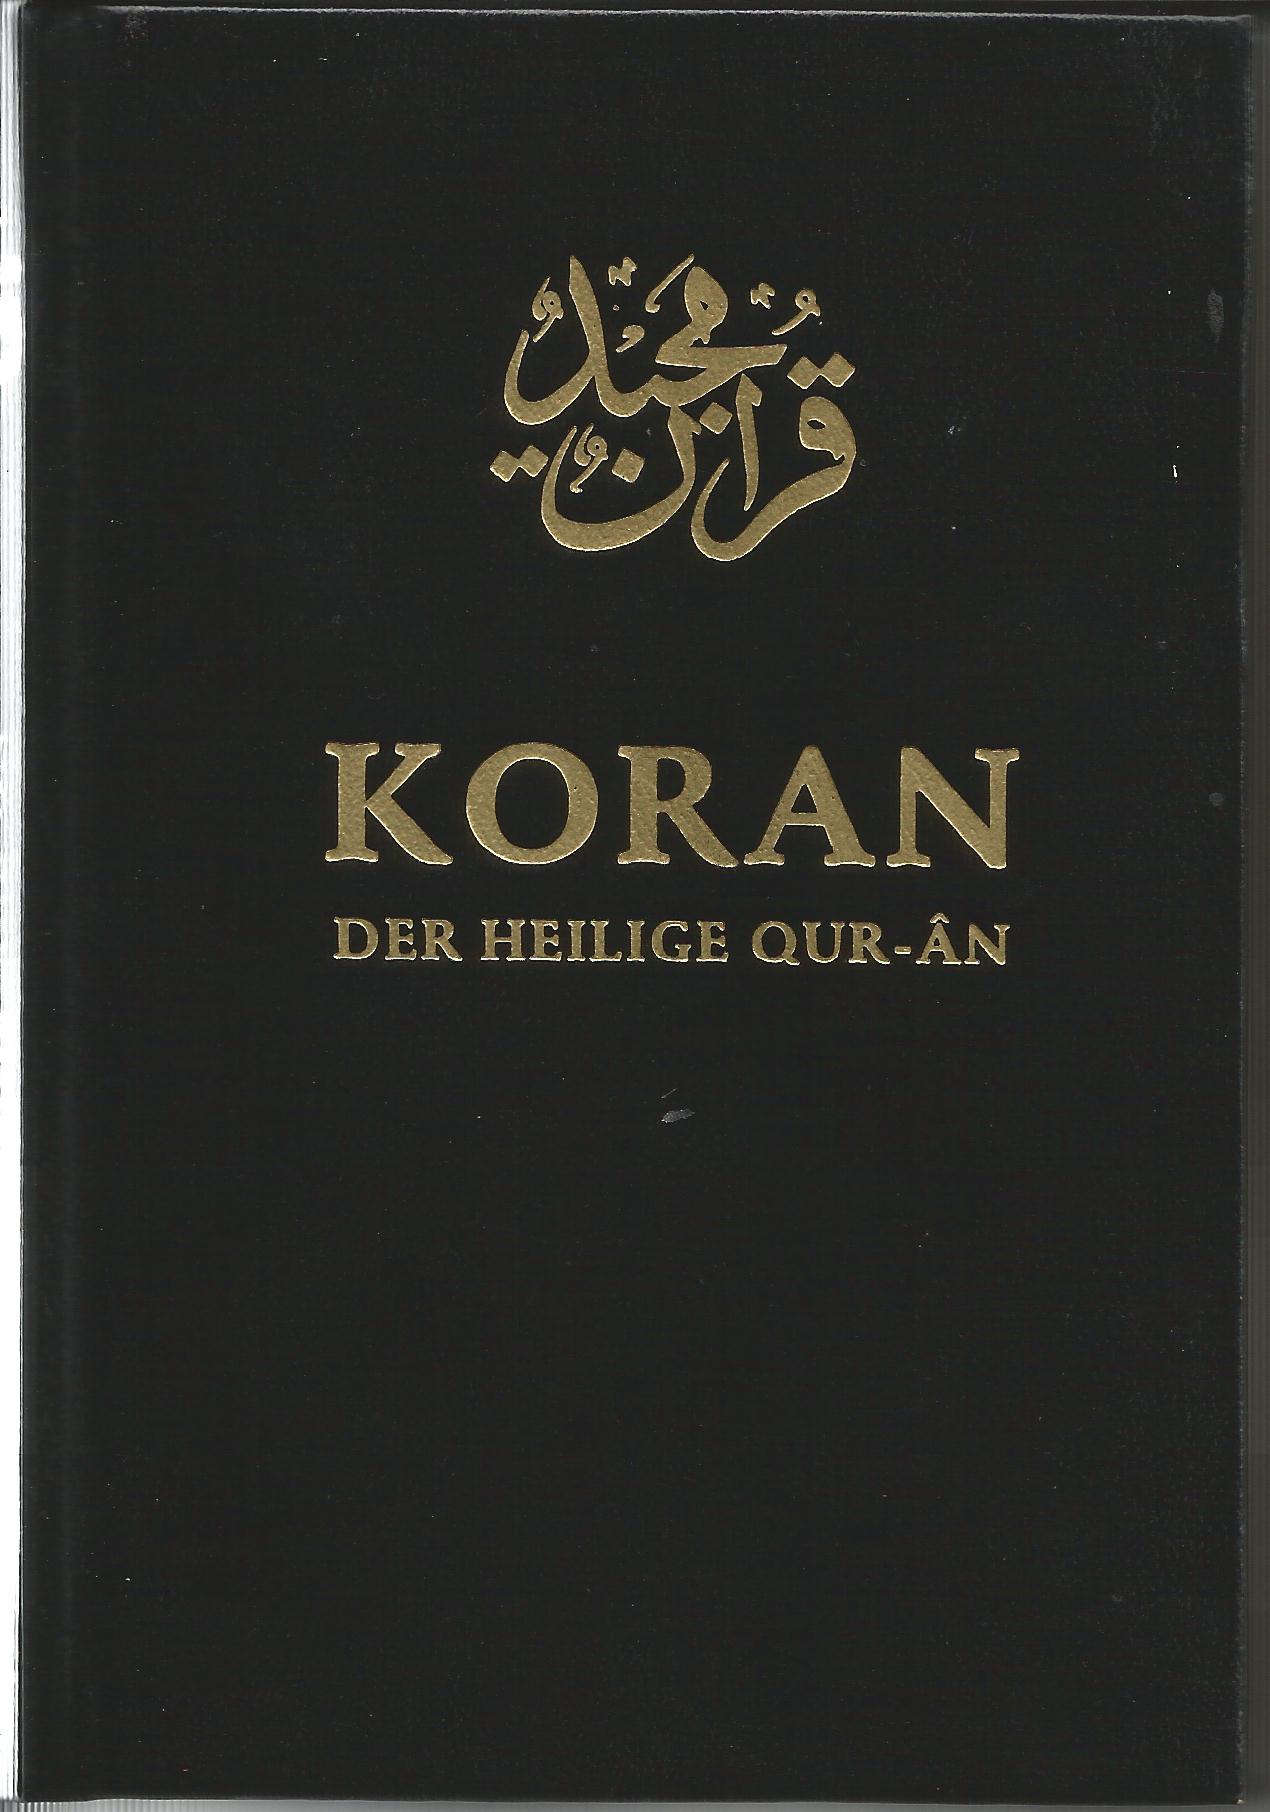 Das ist der Heilige Koran der Moslems. Er ist &uuml;berliefert worden und auf Deutsch &uuml;bersetzt.